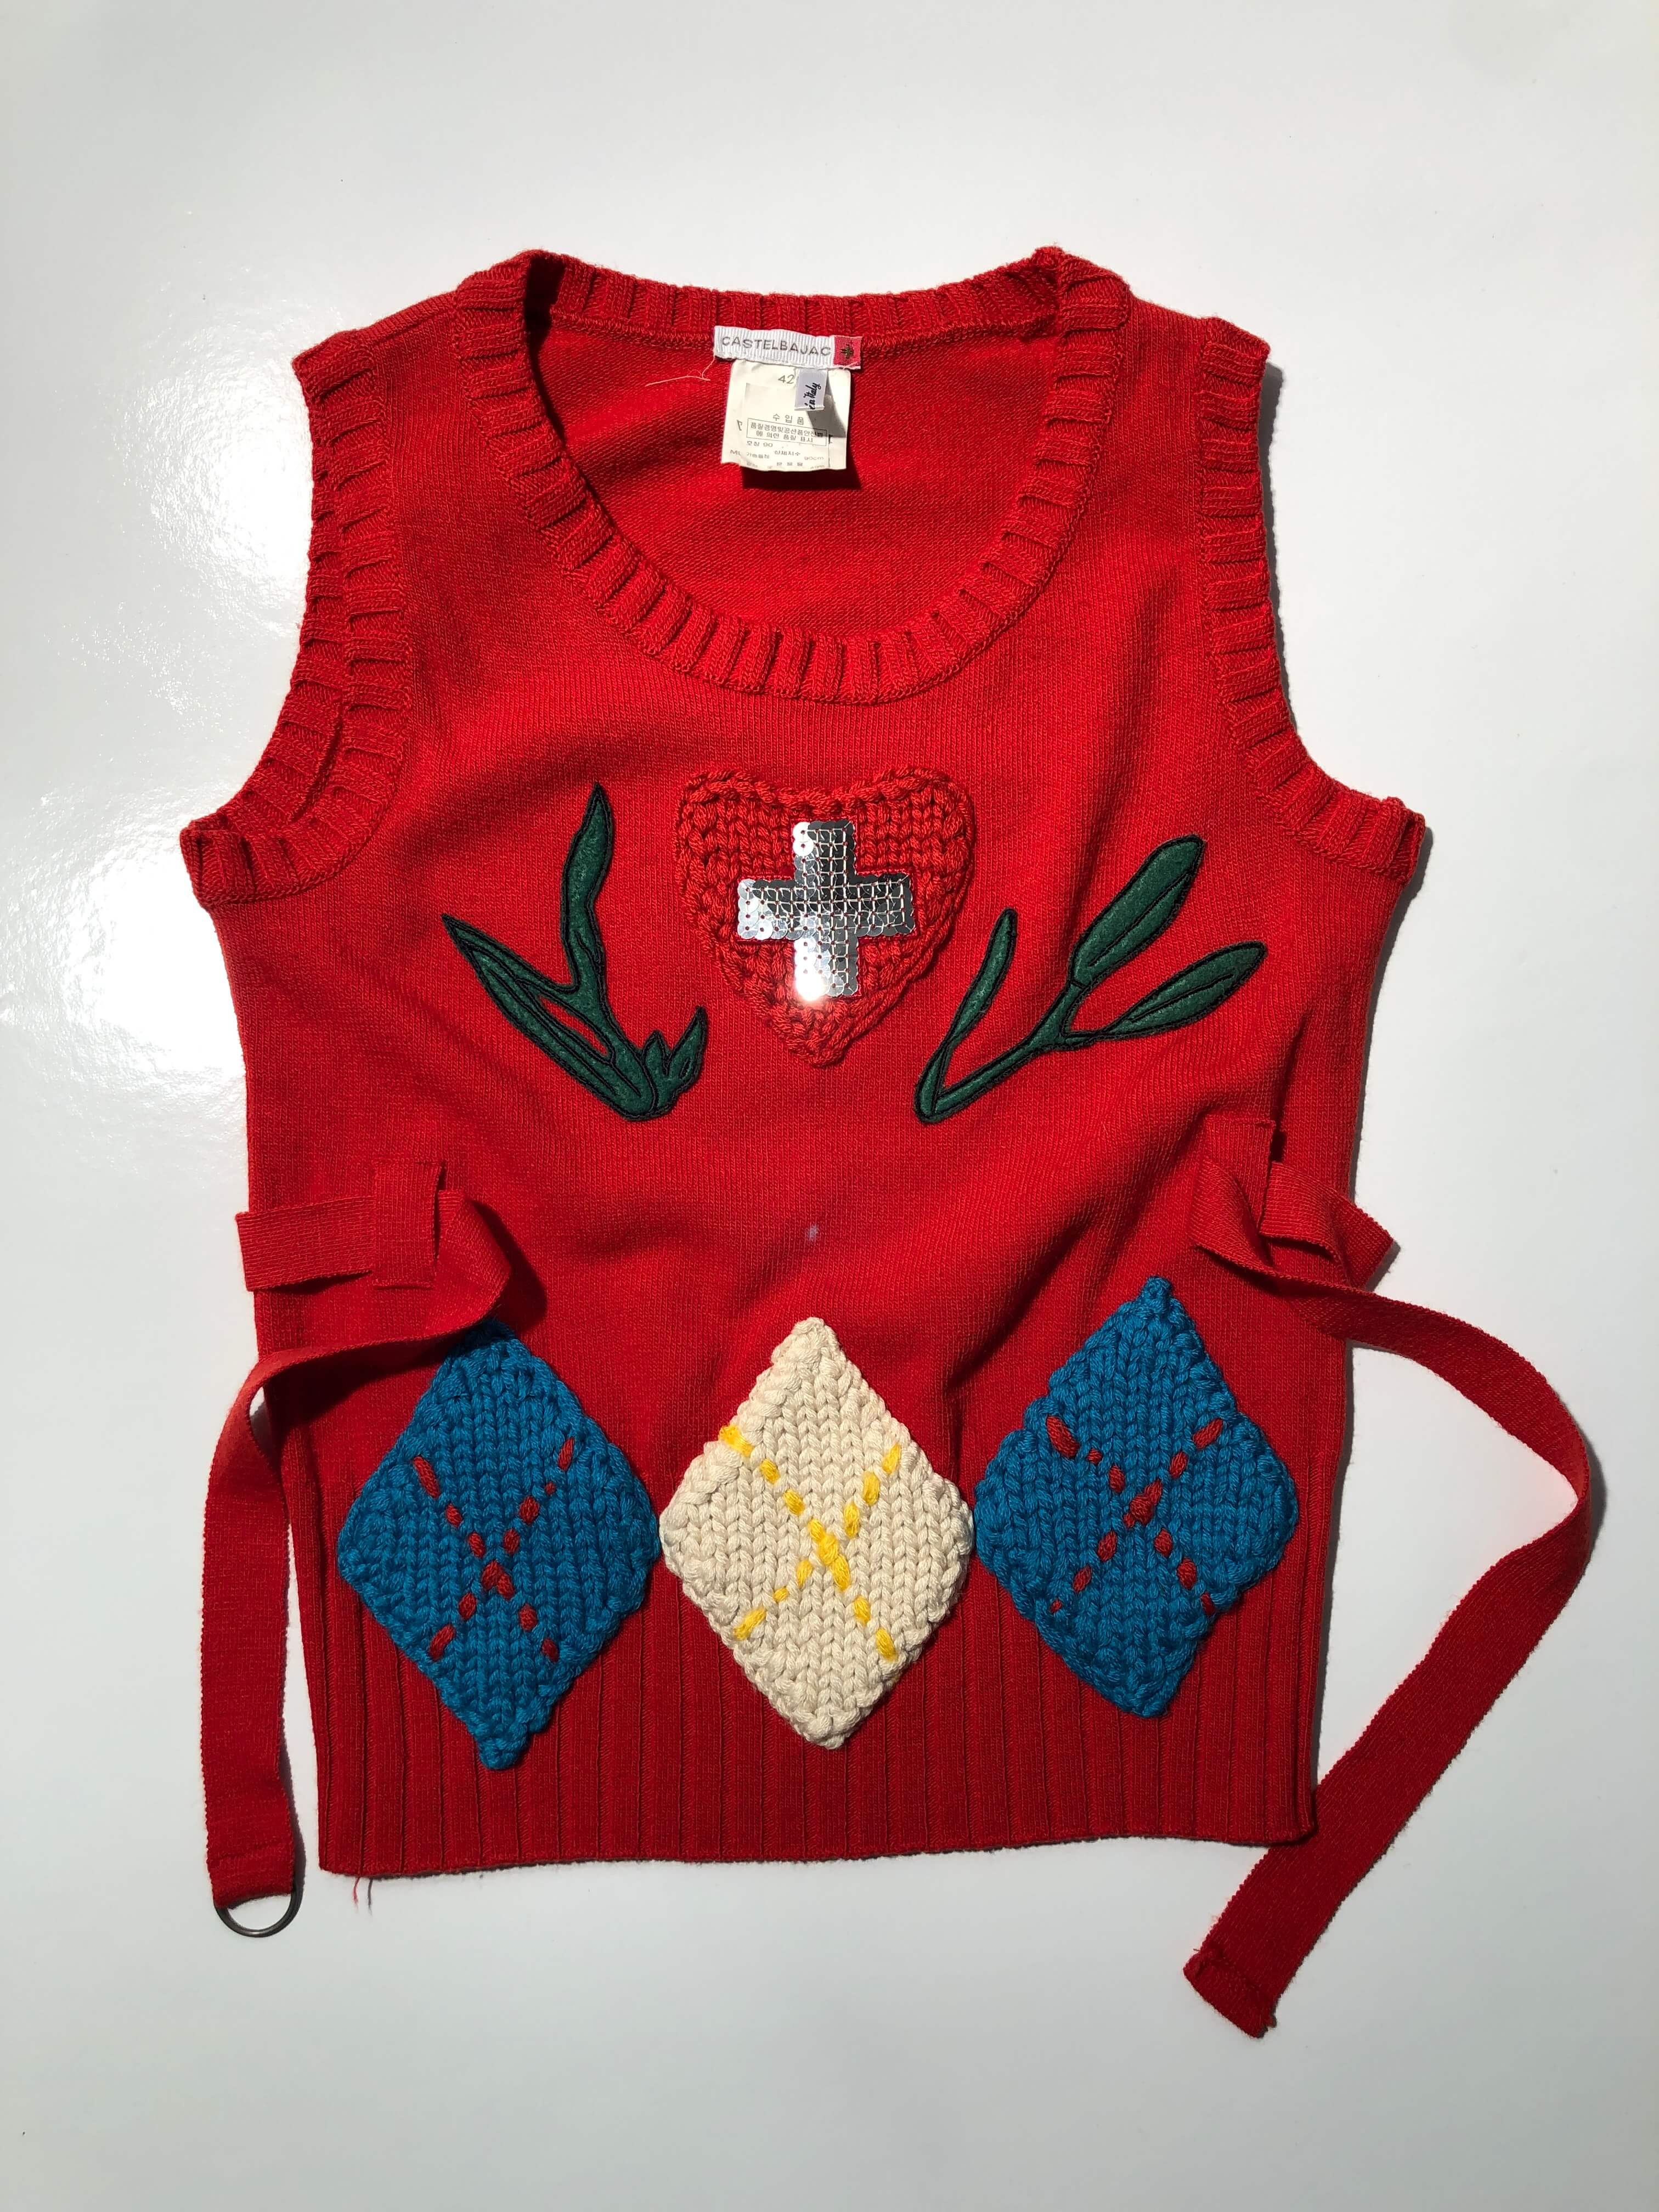 Jean-Charles de Castelbajac knit vest